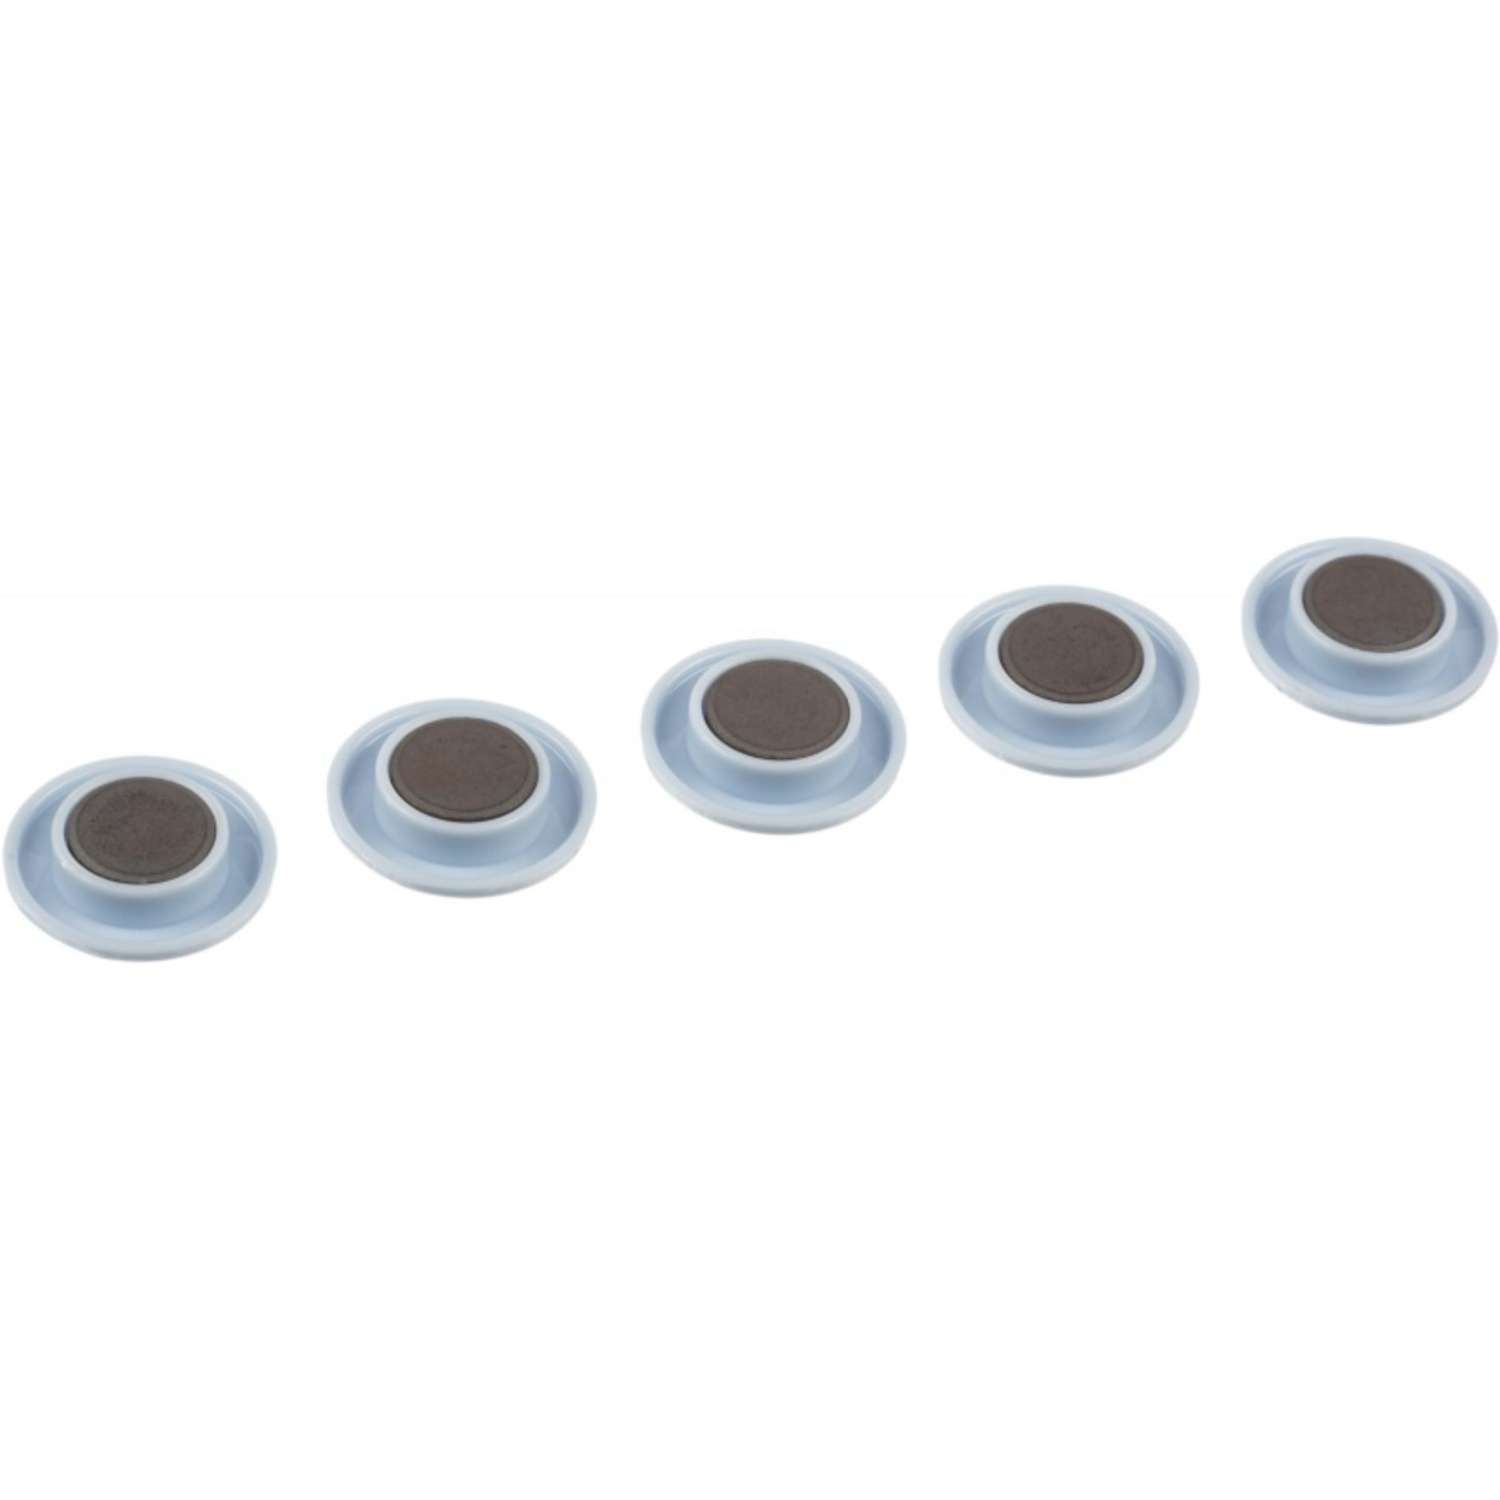 Магнитный держатель Attache для досок диаметр 30ммтемно-серый 4 упаковки по 5 штук - фото 3